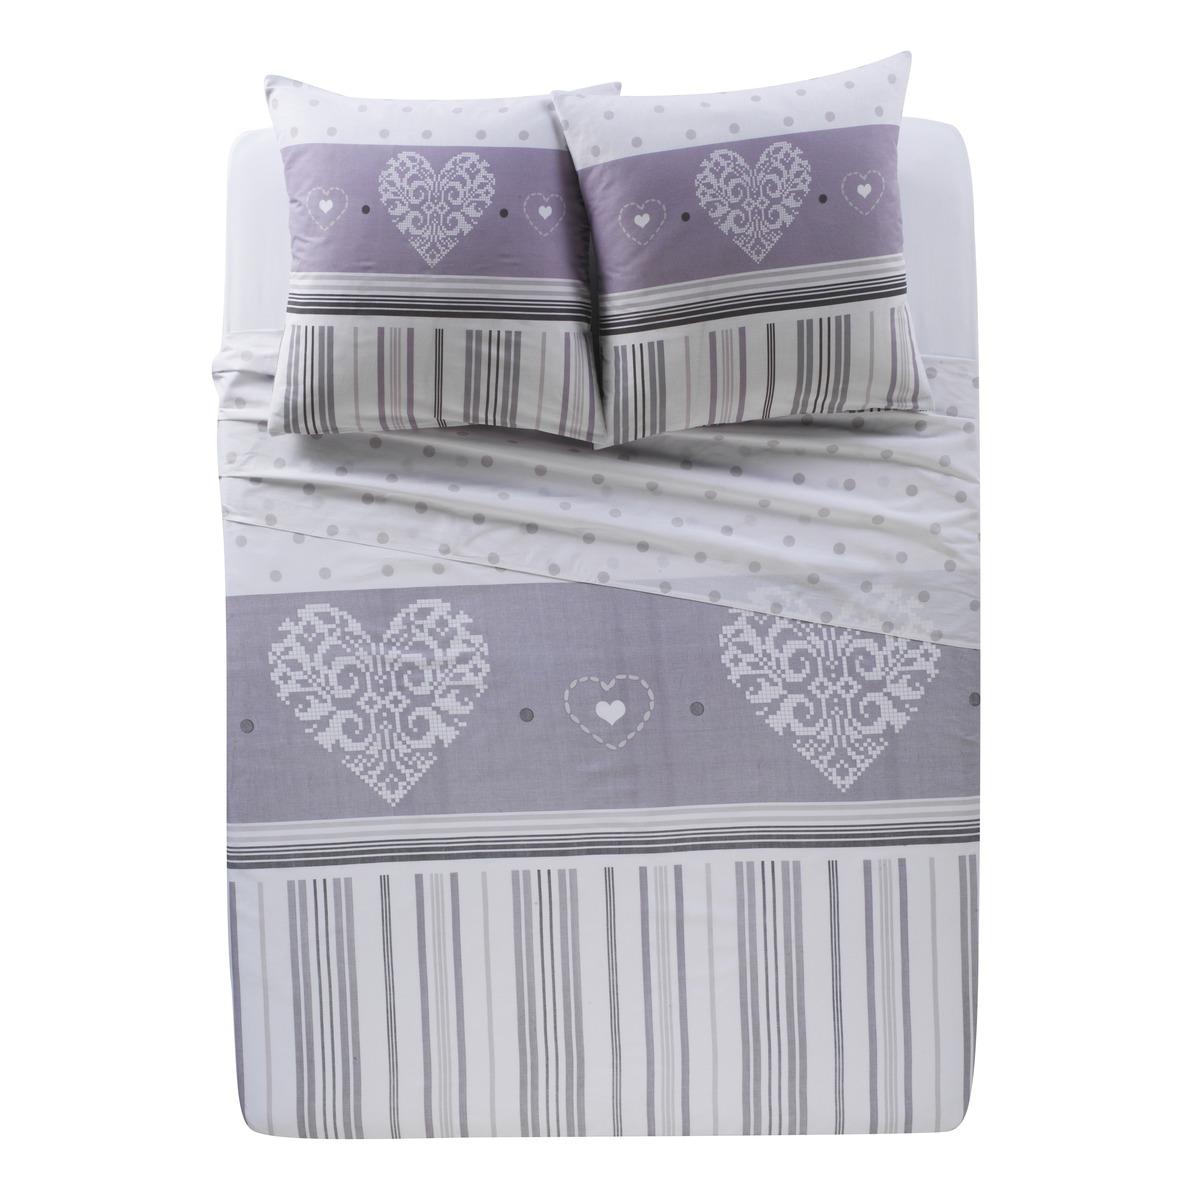 Parure de lit avec drap plat, drap housse + 2 taies d'oreiller - 240 x 300 cm - 140 x 190 cm - 63 x 63 cm - Différents modèles